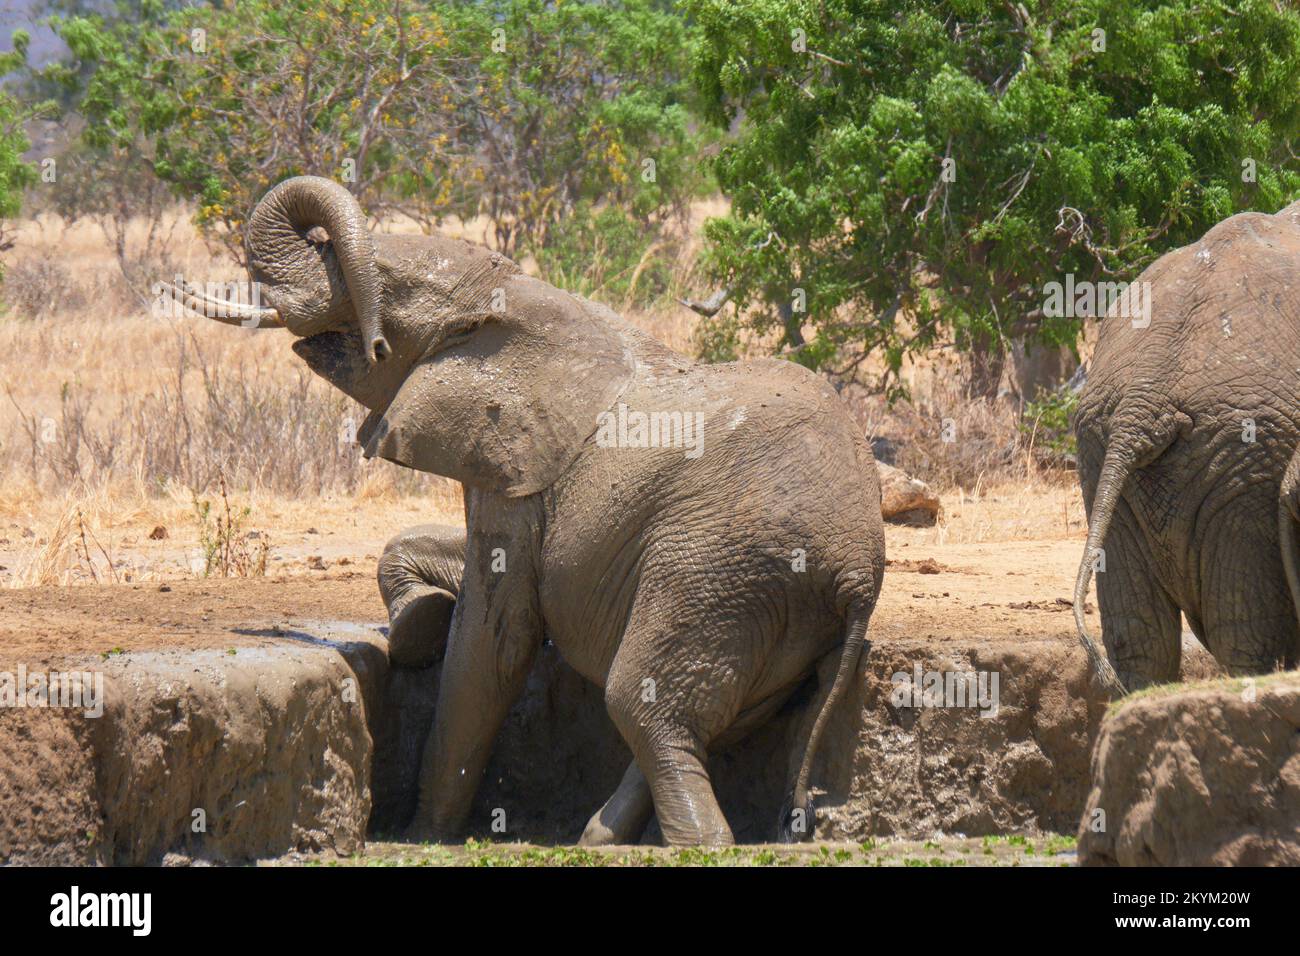 Un éléphant de Bush africain se frotte et se griffe sur une rive de boue d'un trou d'eau dans la chaleur de midi du parc national de Mikumi en saison sèche Banque D'Images